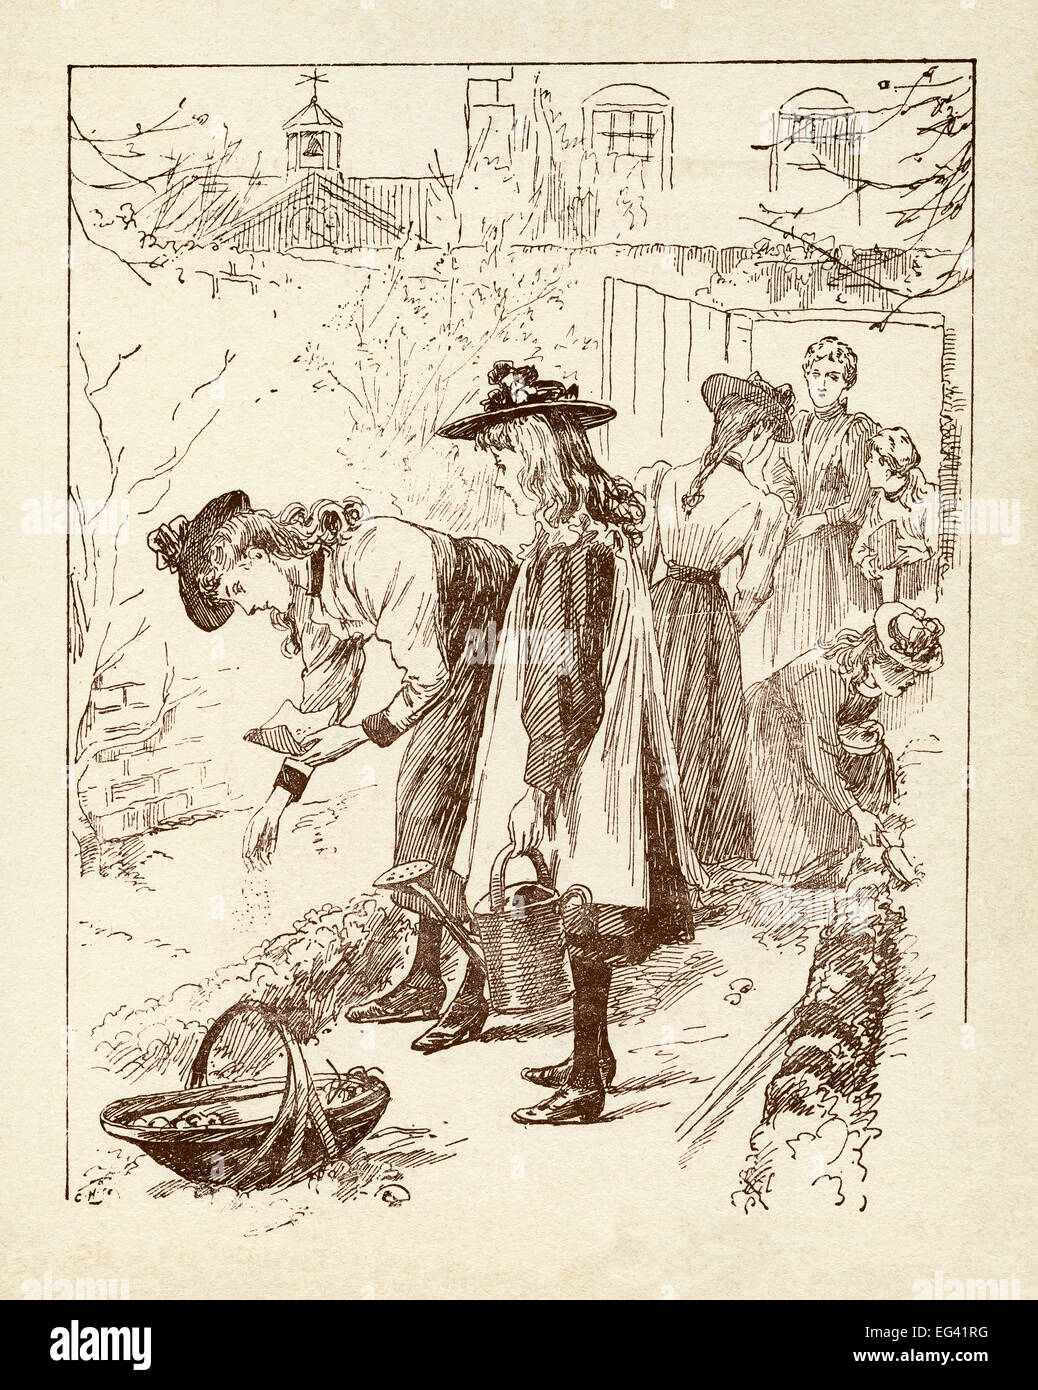 L'illustration du livre de l'époque victorienne de 1877 montrant les enfants de planter des graines dans leur jardin familial Banque D'Images